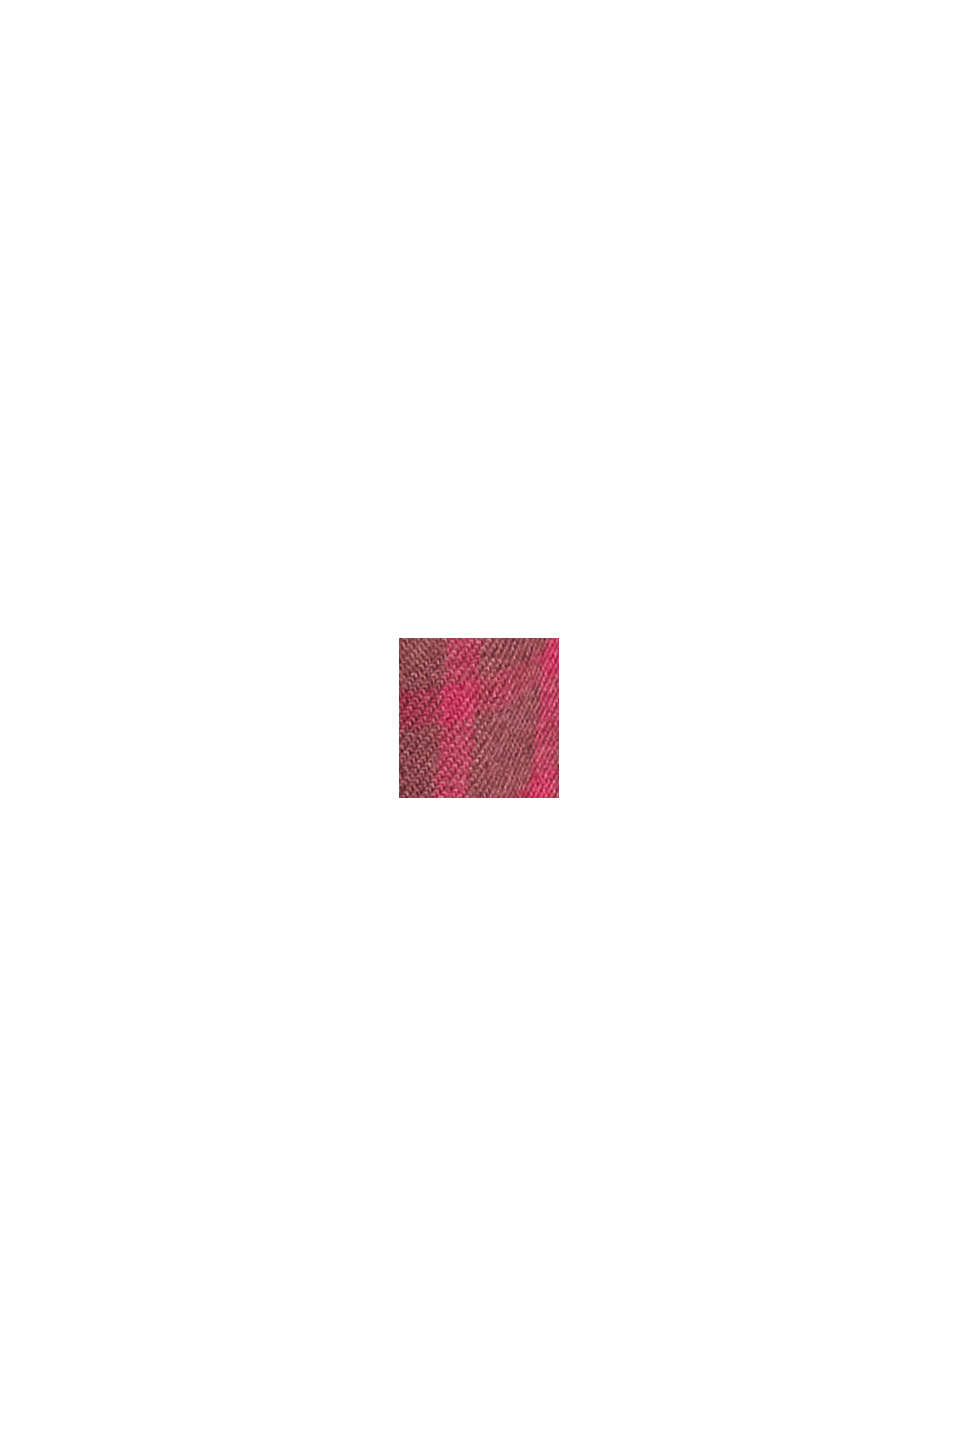 체크 슬림 핏 셔츠, BORDEAUX RED, swatch